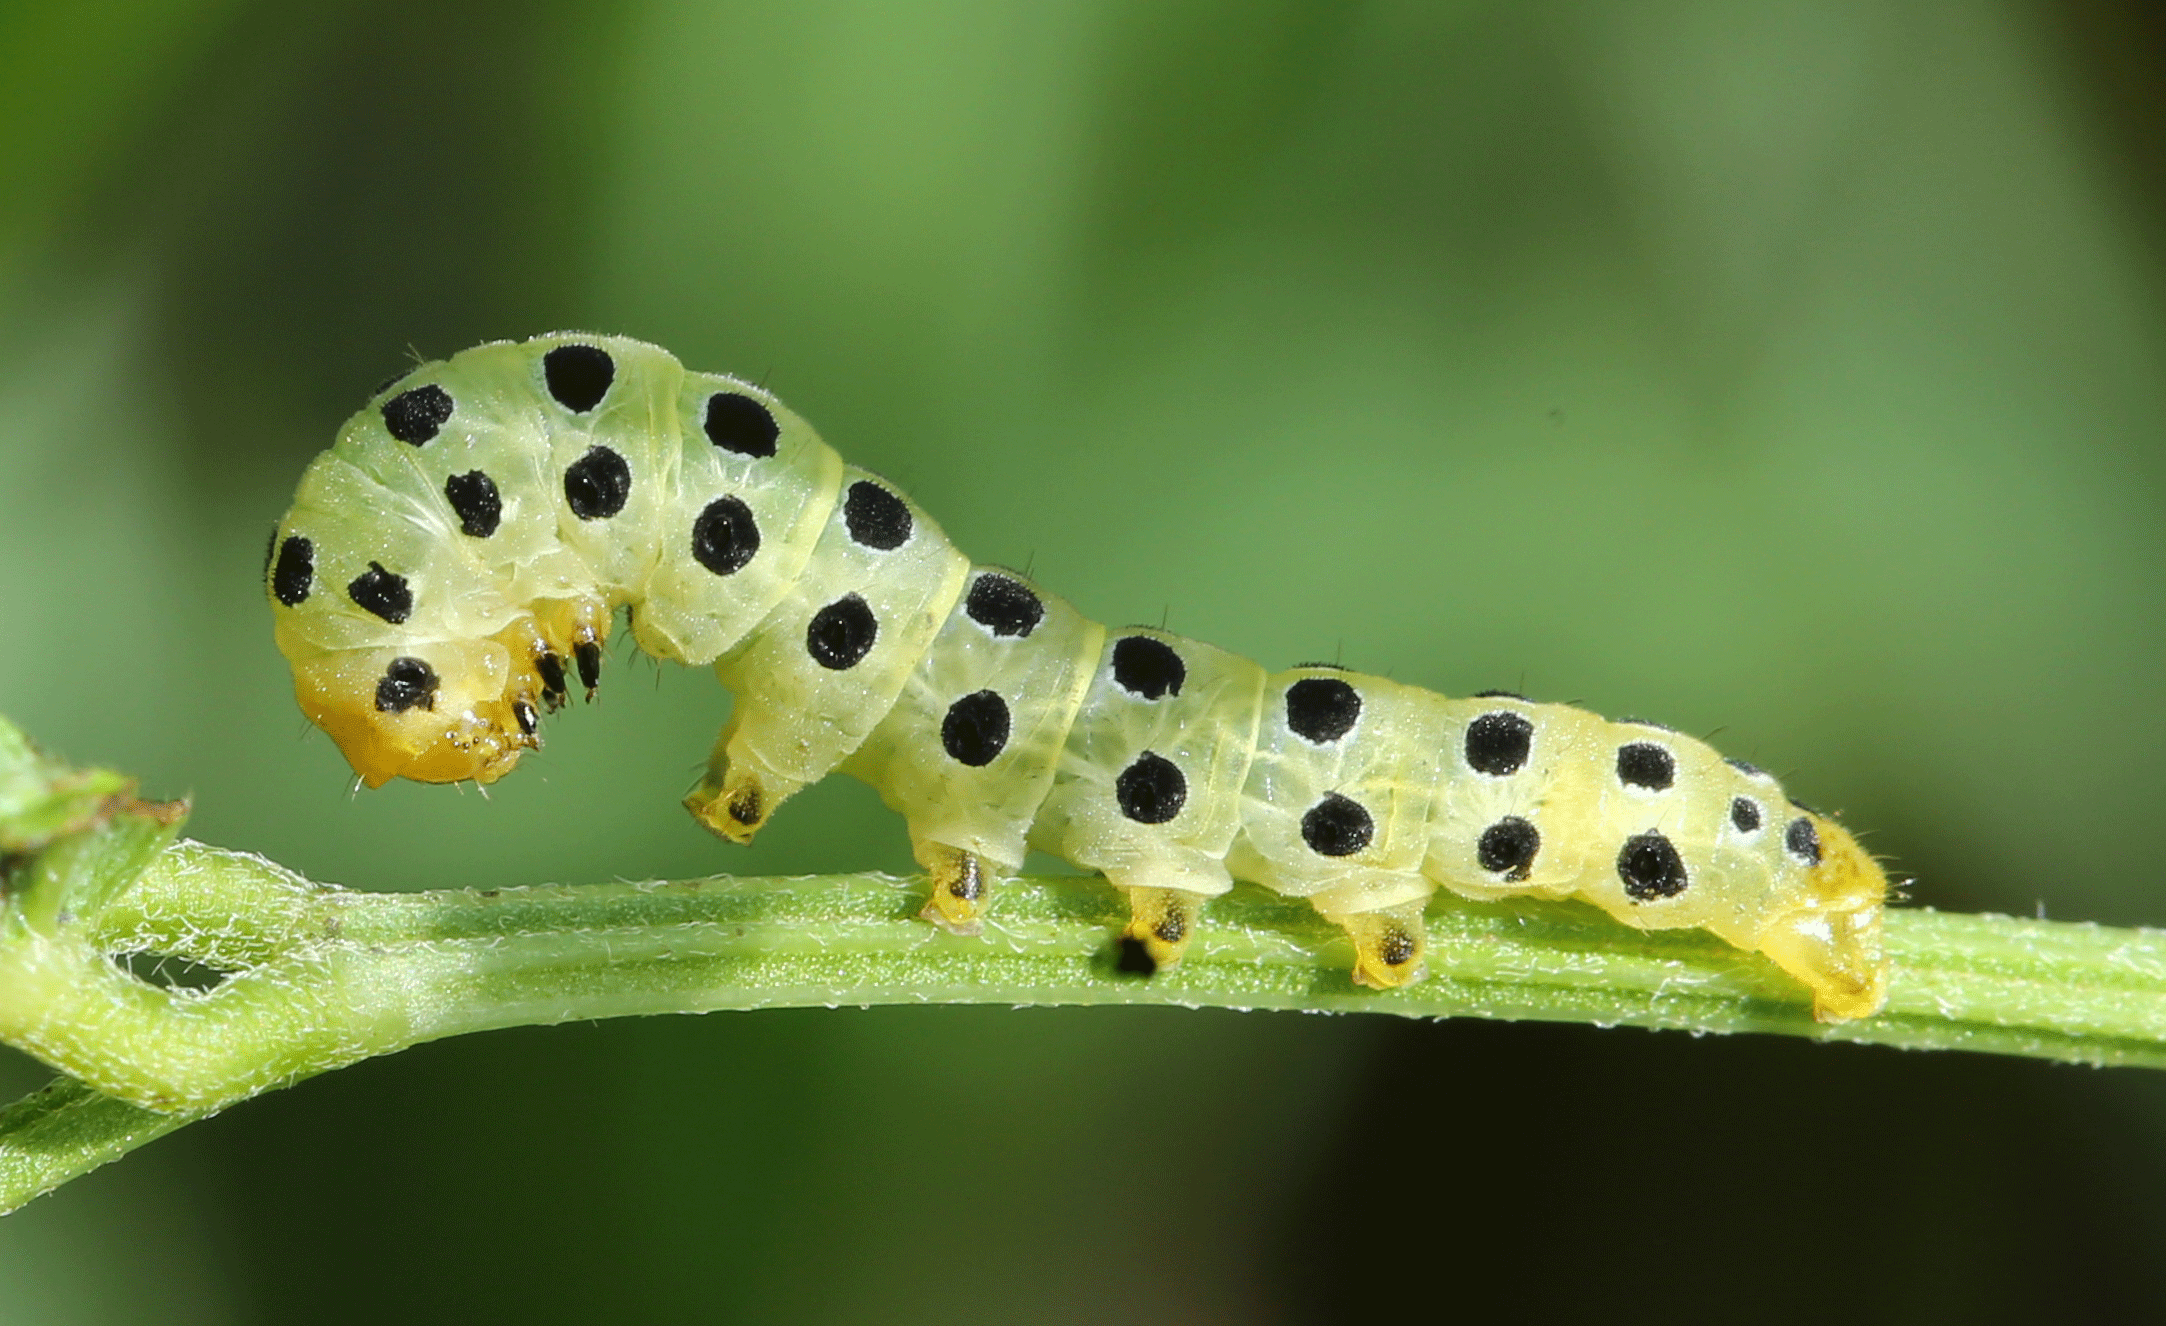  A caterpillar on vegetation.